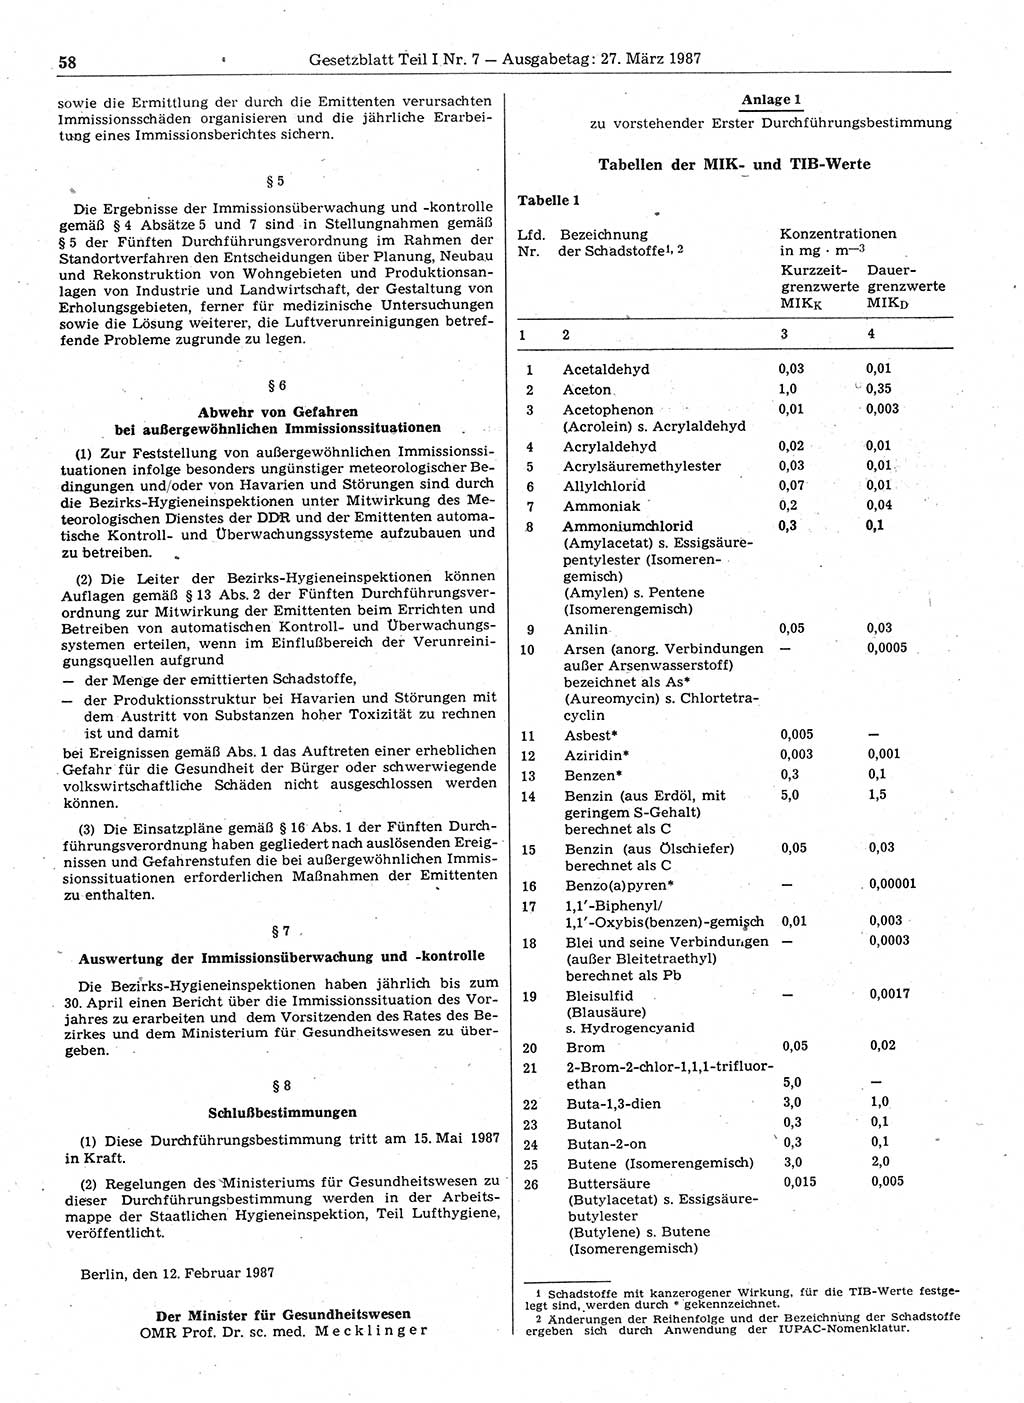 Gesetzblatt (GBl.) der Deutschen Demokratischen Republik (DDR) Teil Ⅰ 1987, Seite 58 (GBl. DDR Ⅰ 1987, S. 58)